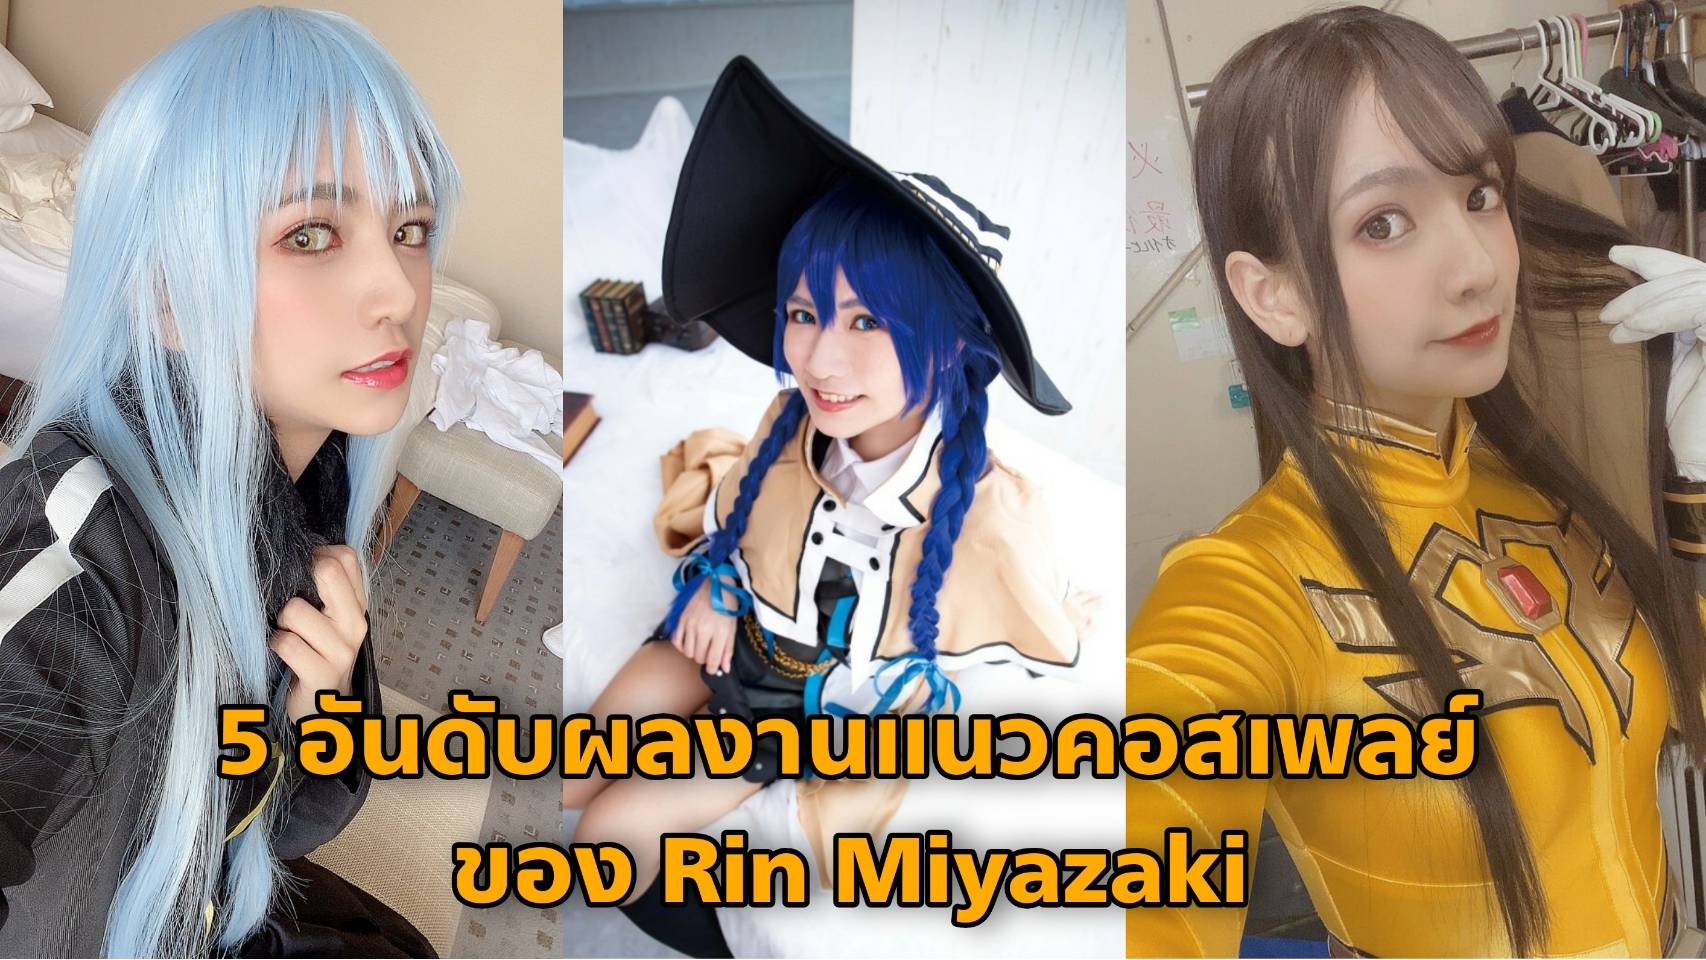 5 ผลงานแนว Cosplay ของ Rin Miyazaki (ริน มิยาซากิ)  4